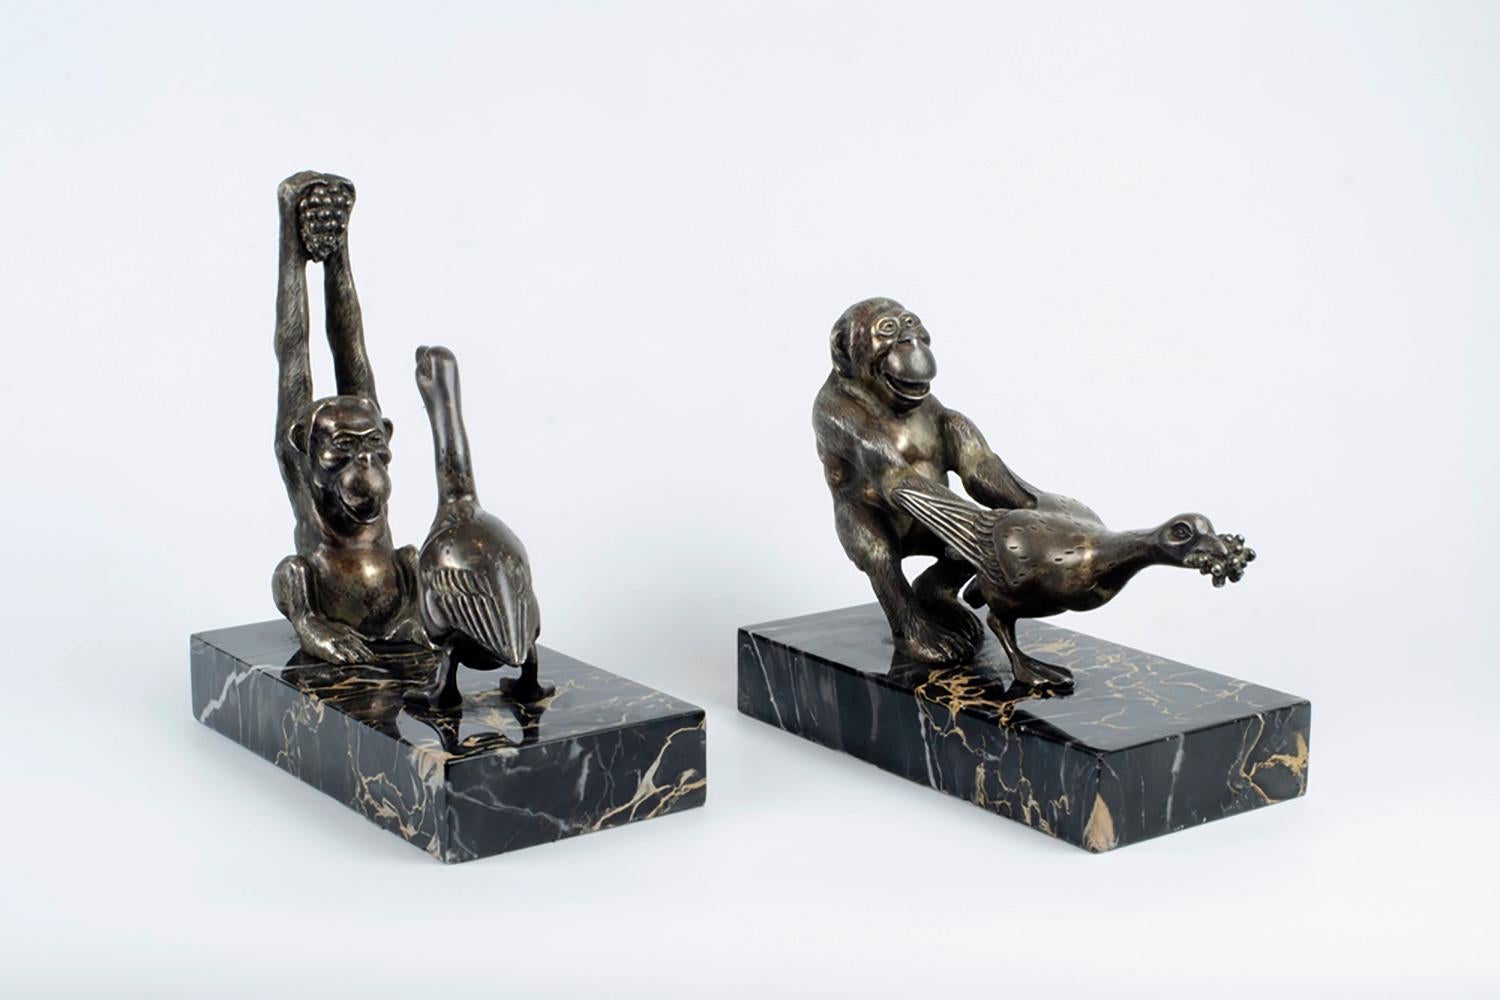 Rare paire de serre-livres représentant un chimpanzé tirant une oie en bronze sur une base en marbre.
Signé sur la base.
Excellent état.
Français.
Vers 1920.
